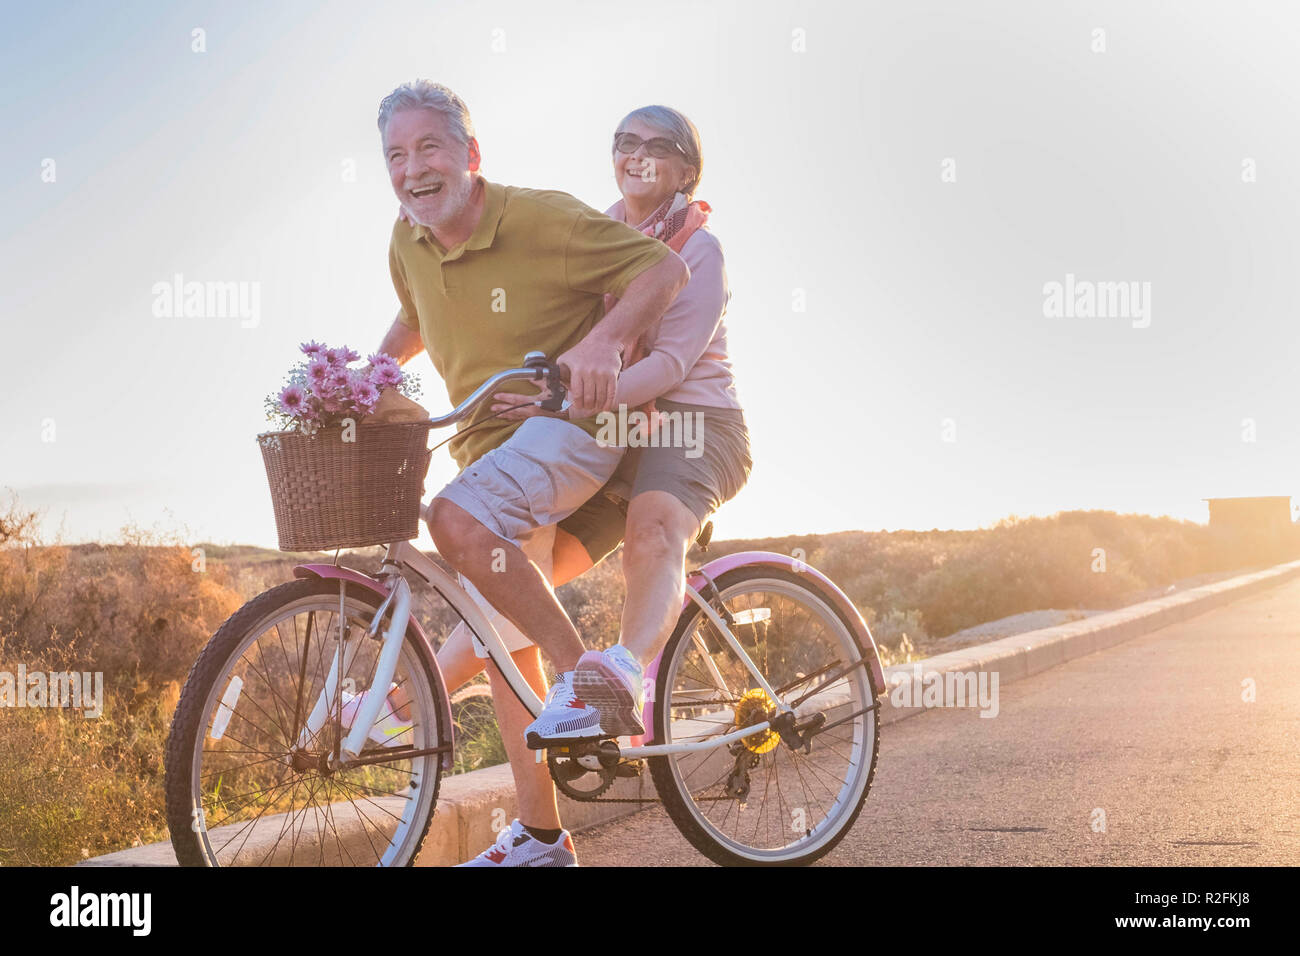 Freude und Glück für Erwachsene Ehepaar starten und Spaß haben, die auf demselben Bike Outdoor Aktivität mit Sun Hintergrundbeleuchtung auf dem Hintergrund. klares und helles Bild für Lächeln und Lachen Menschen. lifestyle Konzept genießen. Stockfoto